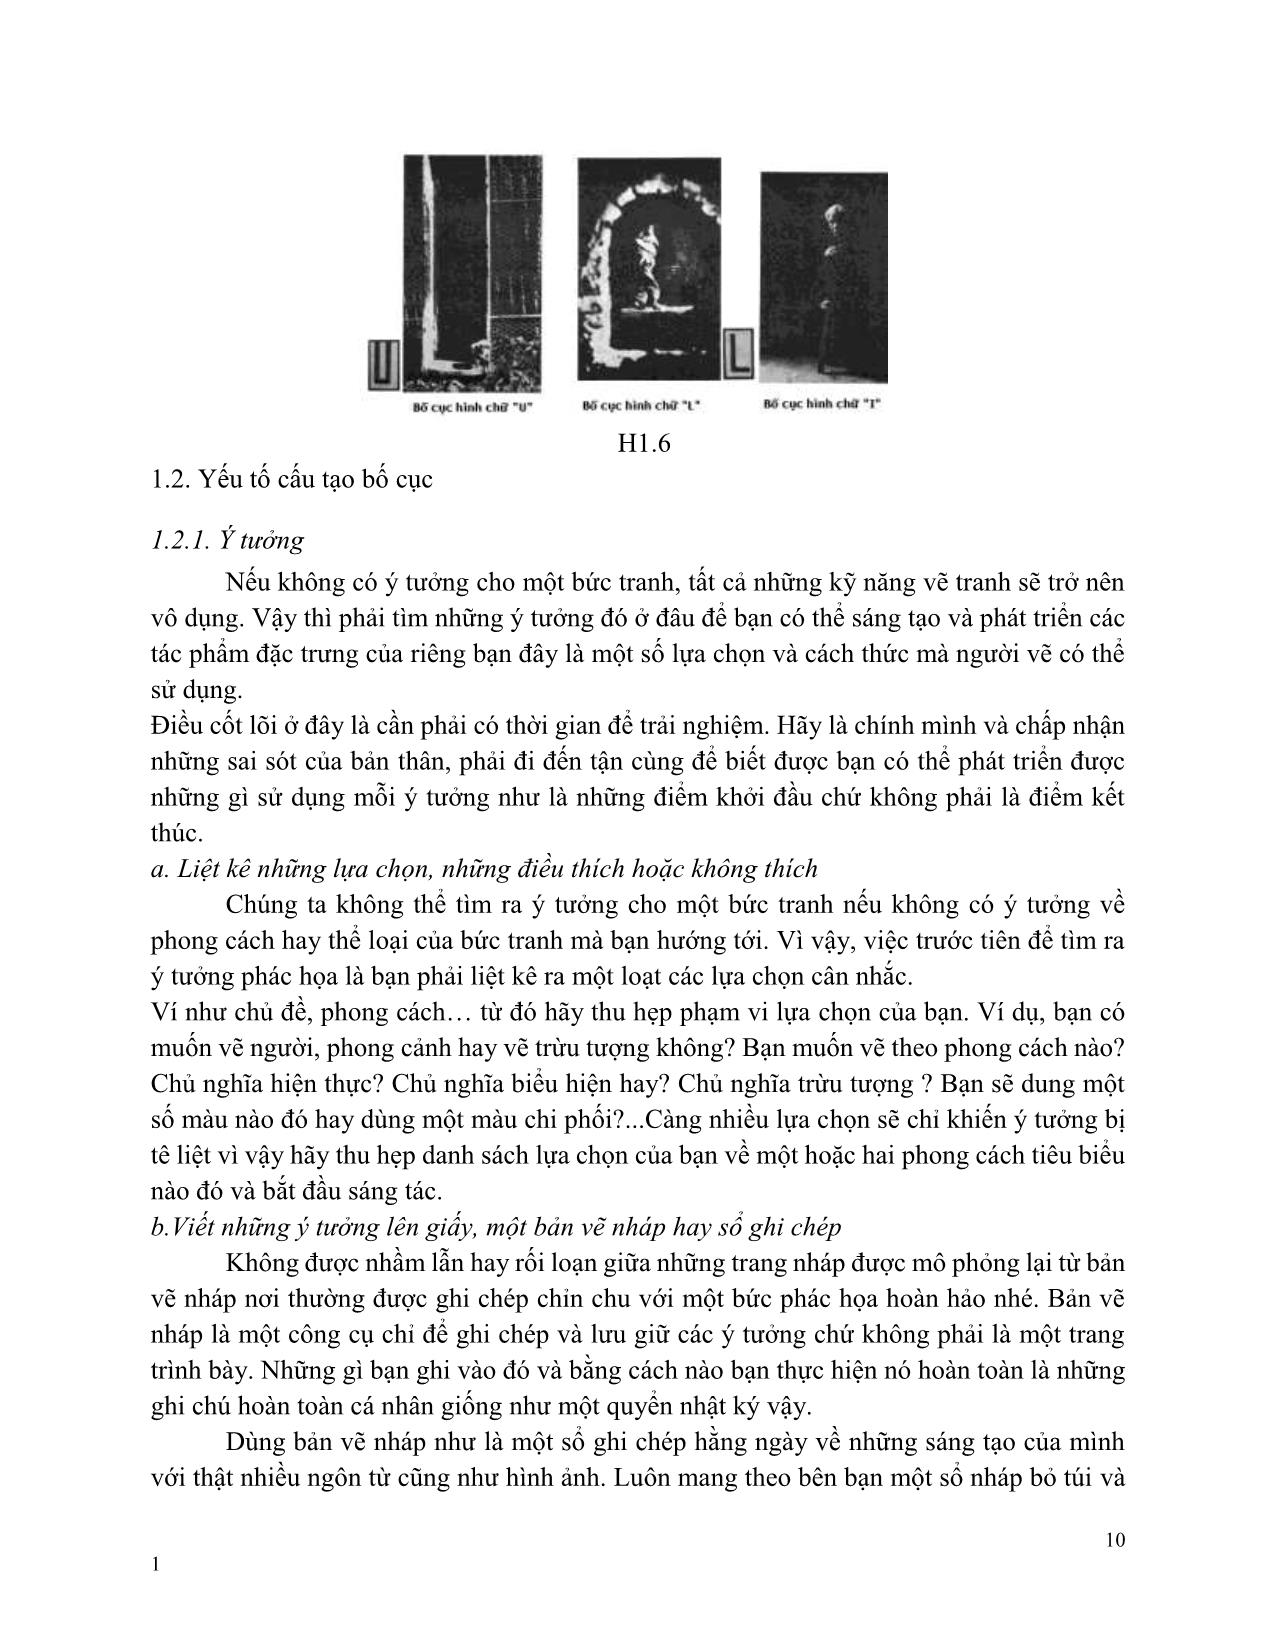 Giáo trình Hội họa - Bố cục cơ bản trang 10